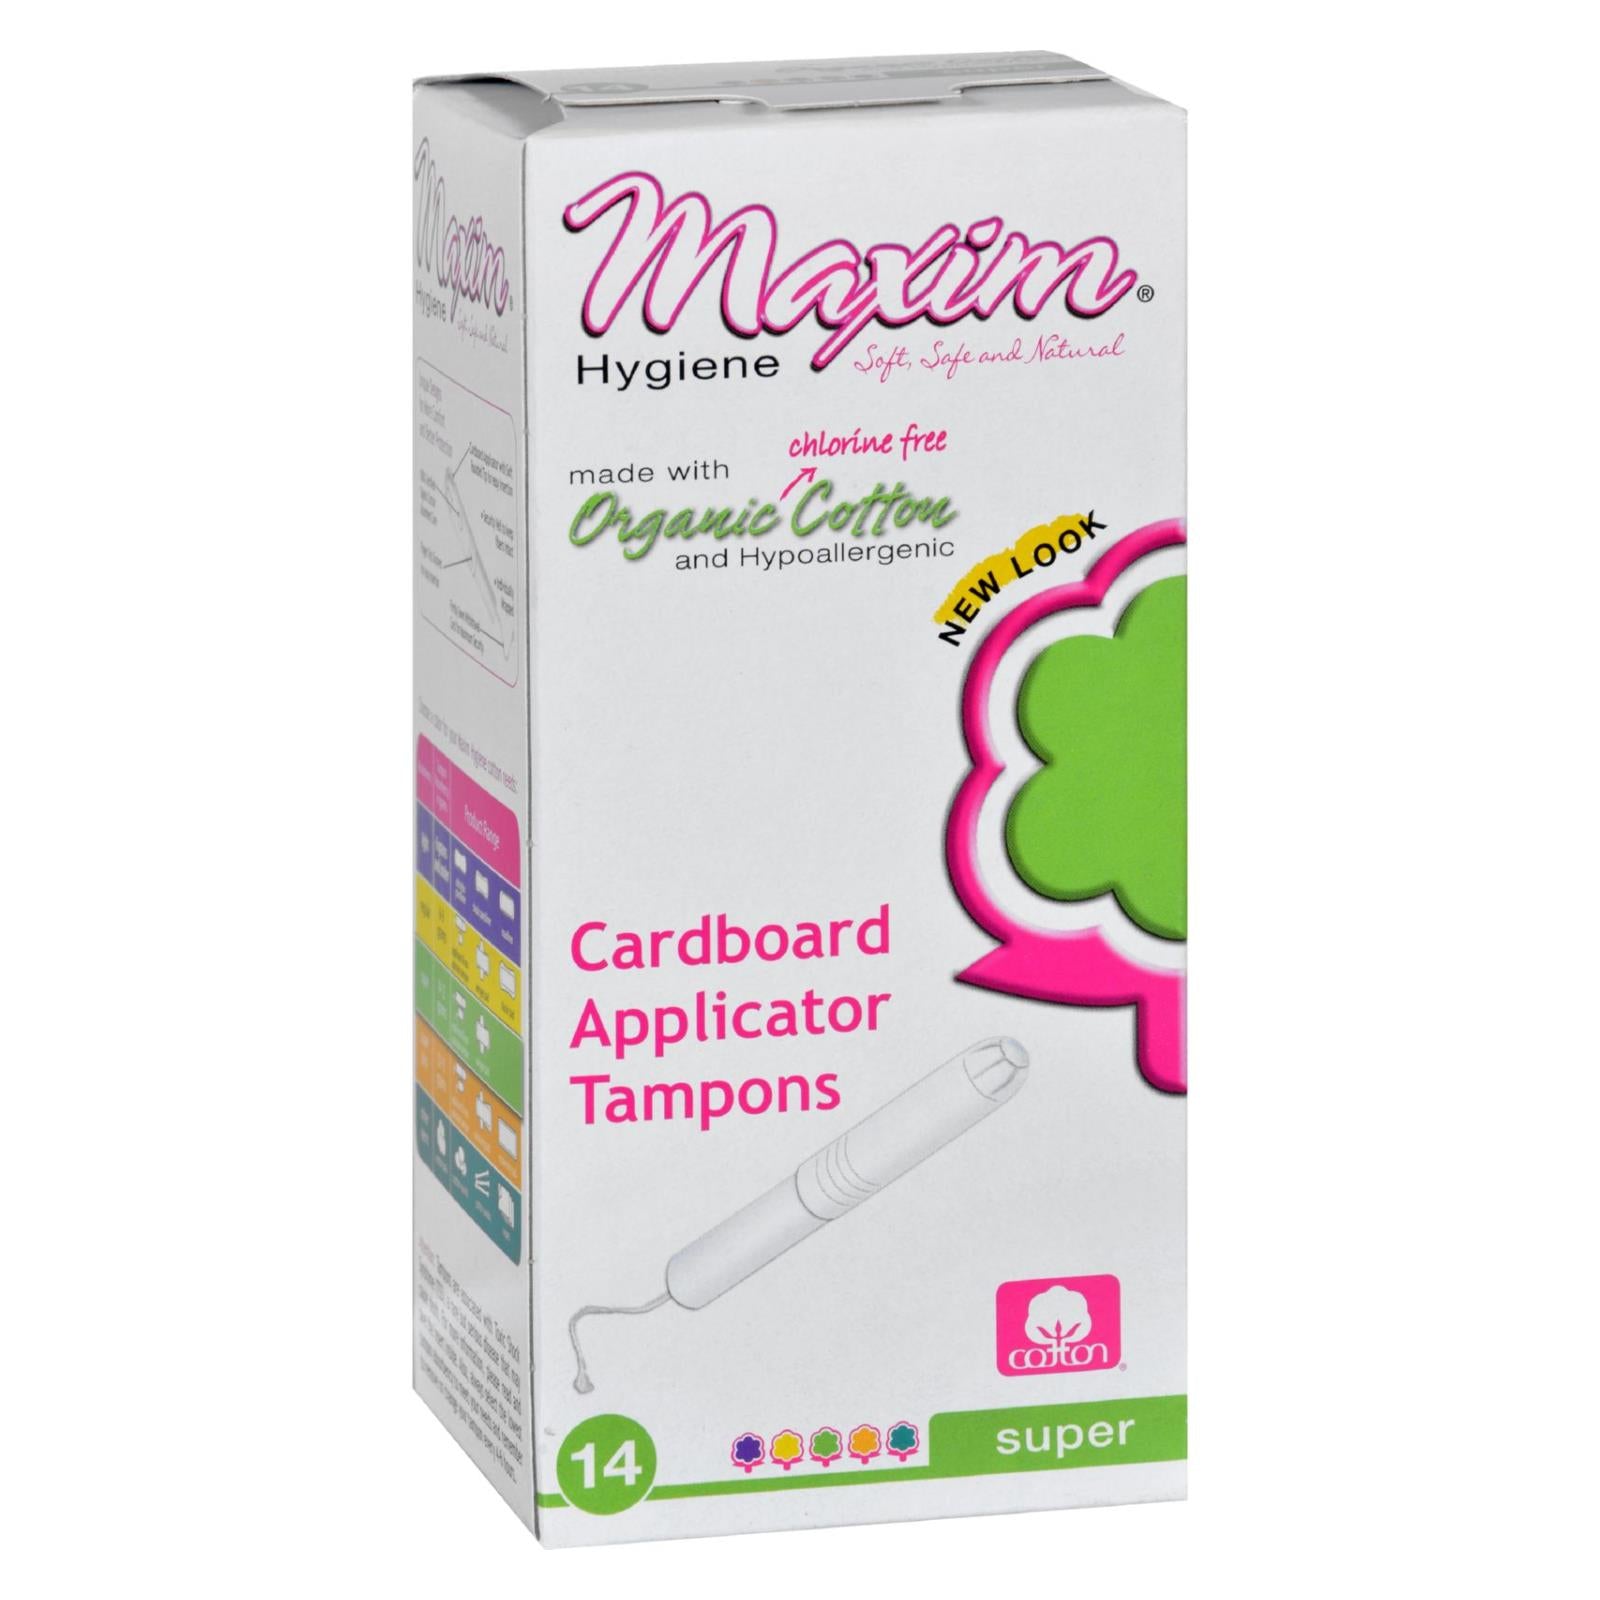 Produits d'hygiène Maxim, Tampons en coton biologique de Maxim Hygiene Products - Applicateur en carton - Super - 14 unités